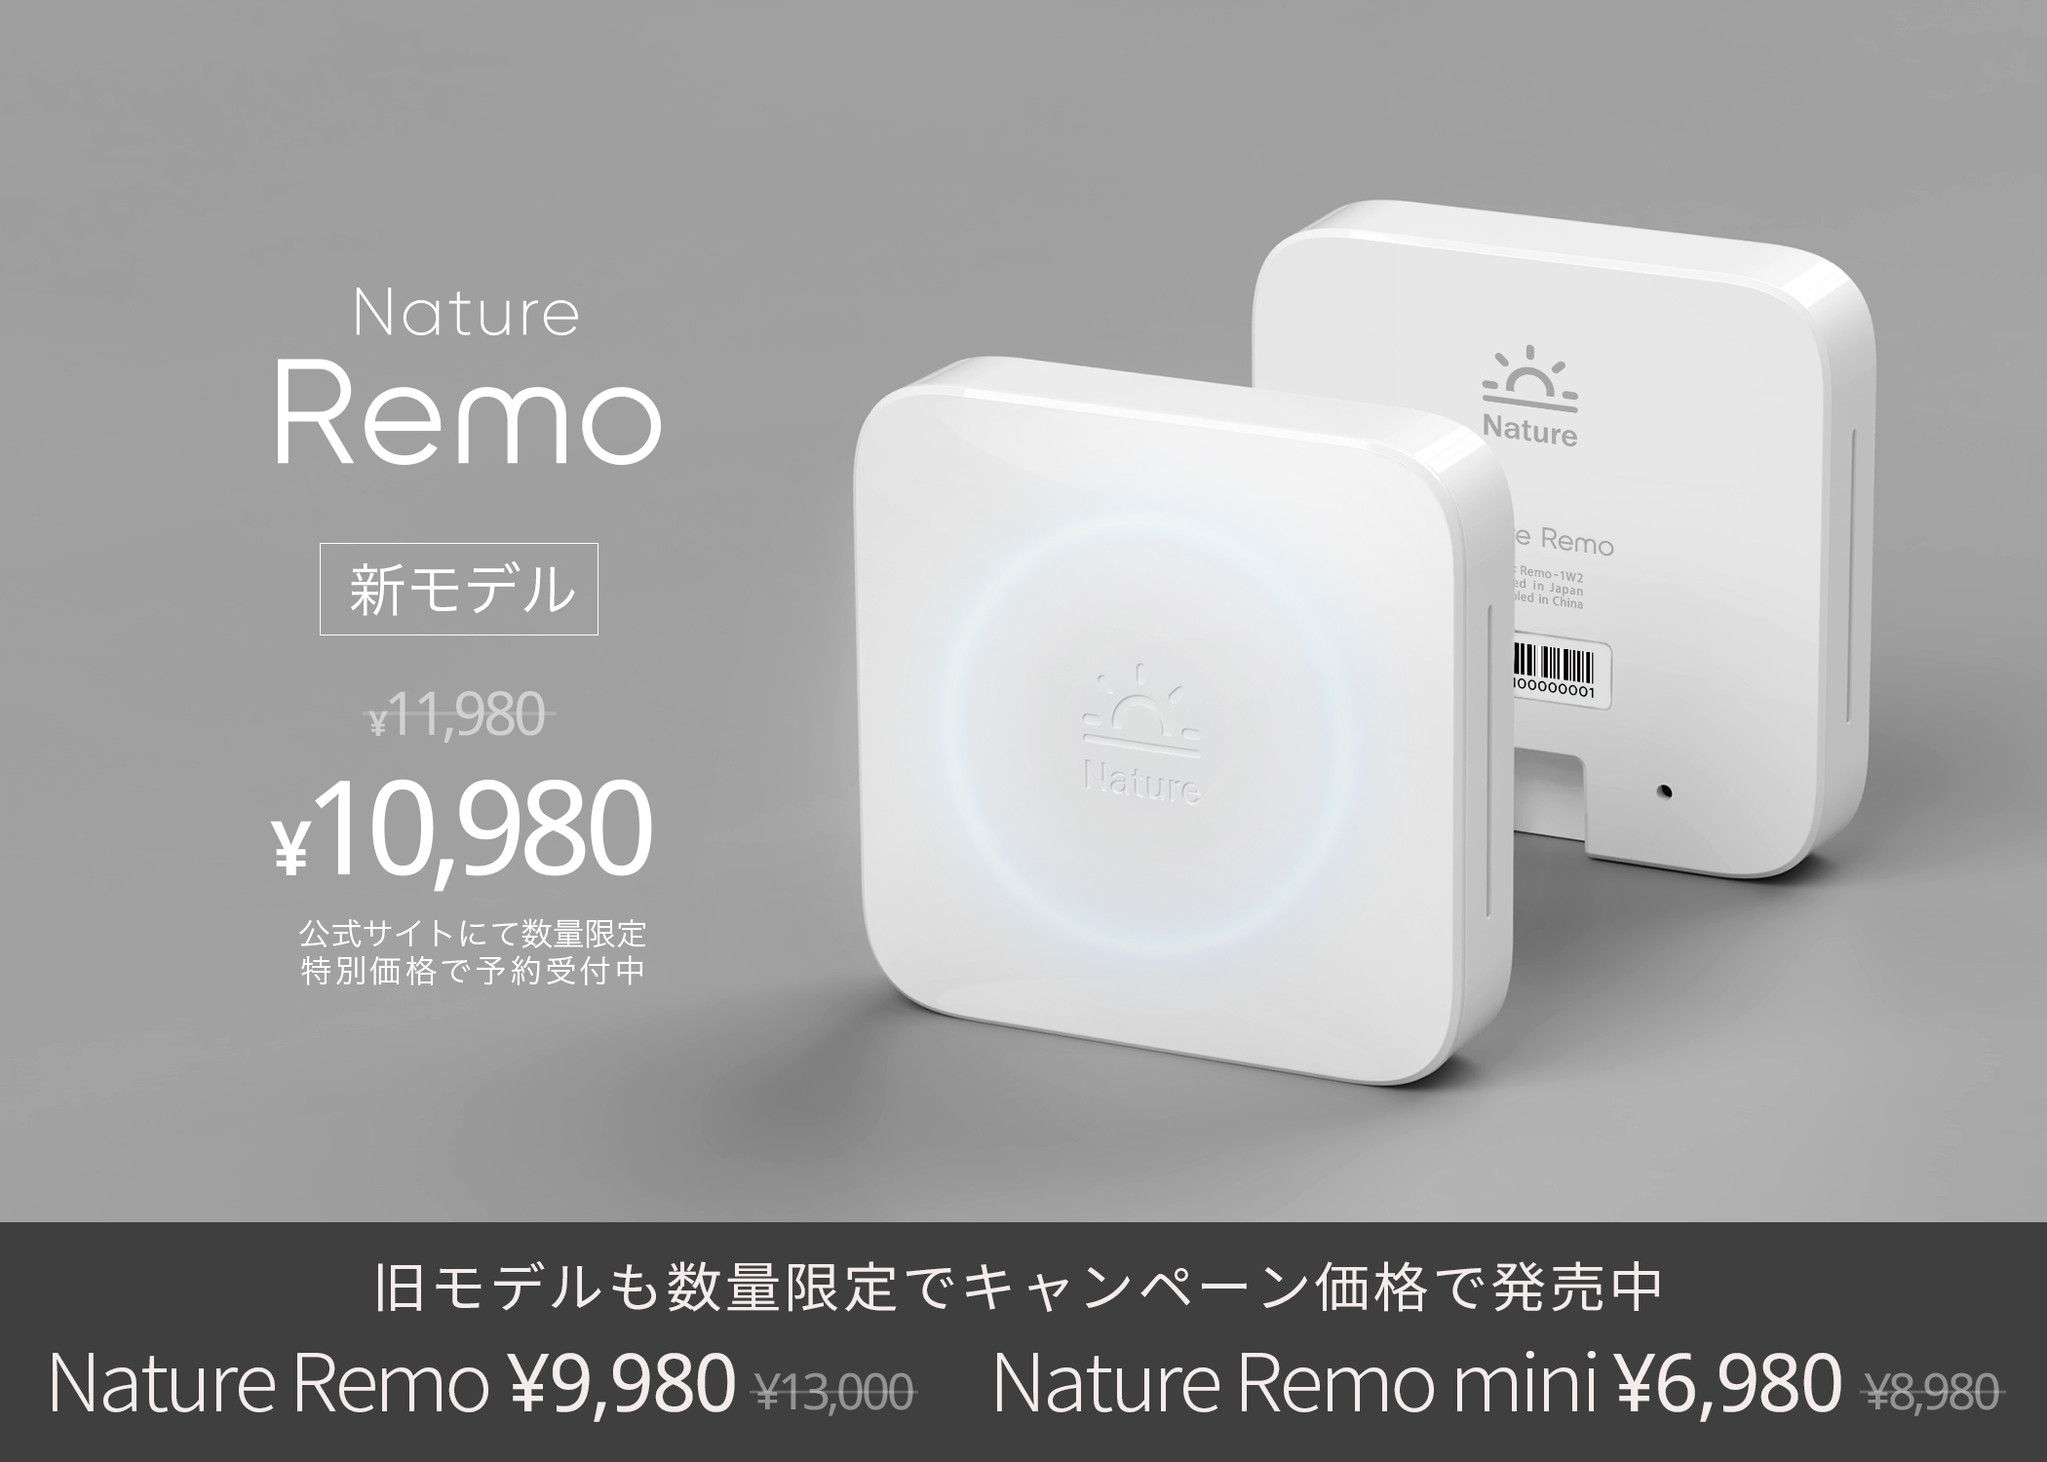 スマートリモコン「Nature Remo」マイナーチェンジモデルを特別価格10,980円で先行予約開始。旧シリーズも割引キャンペーンを開始